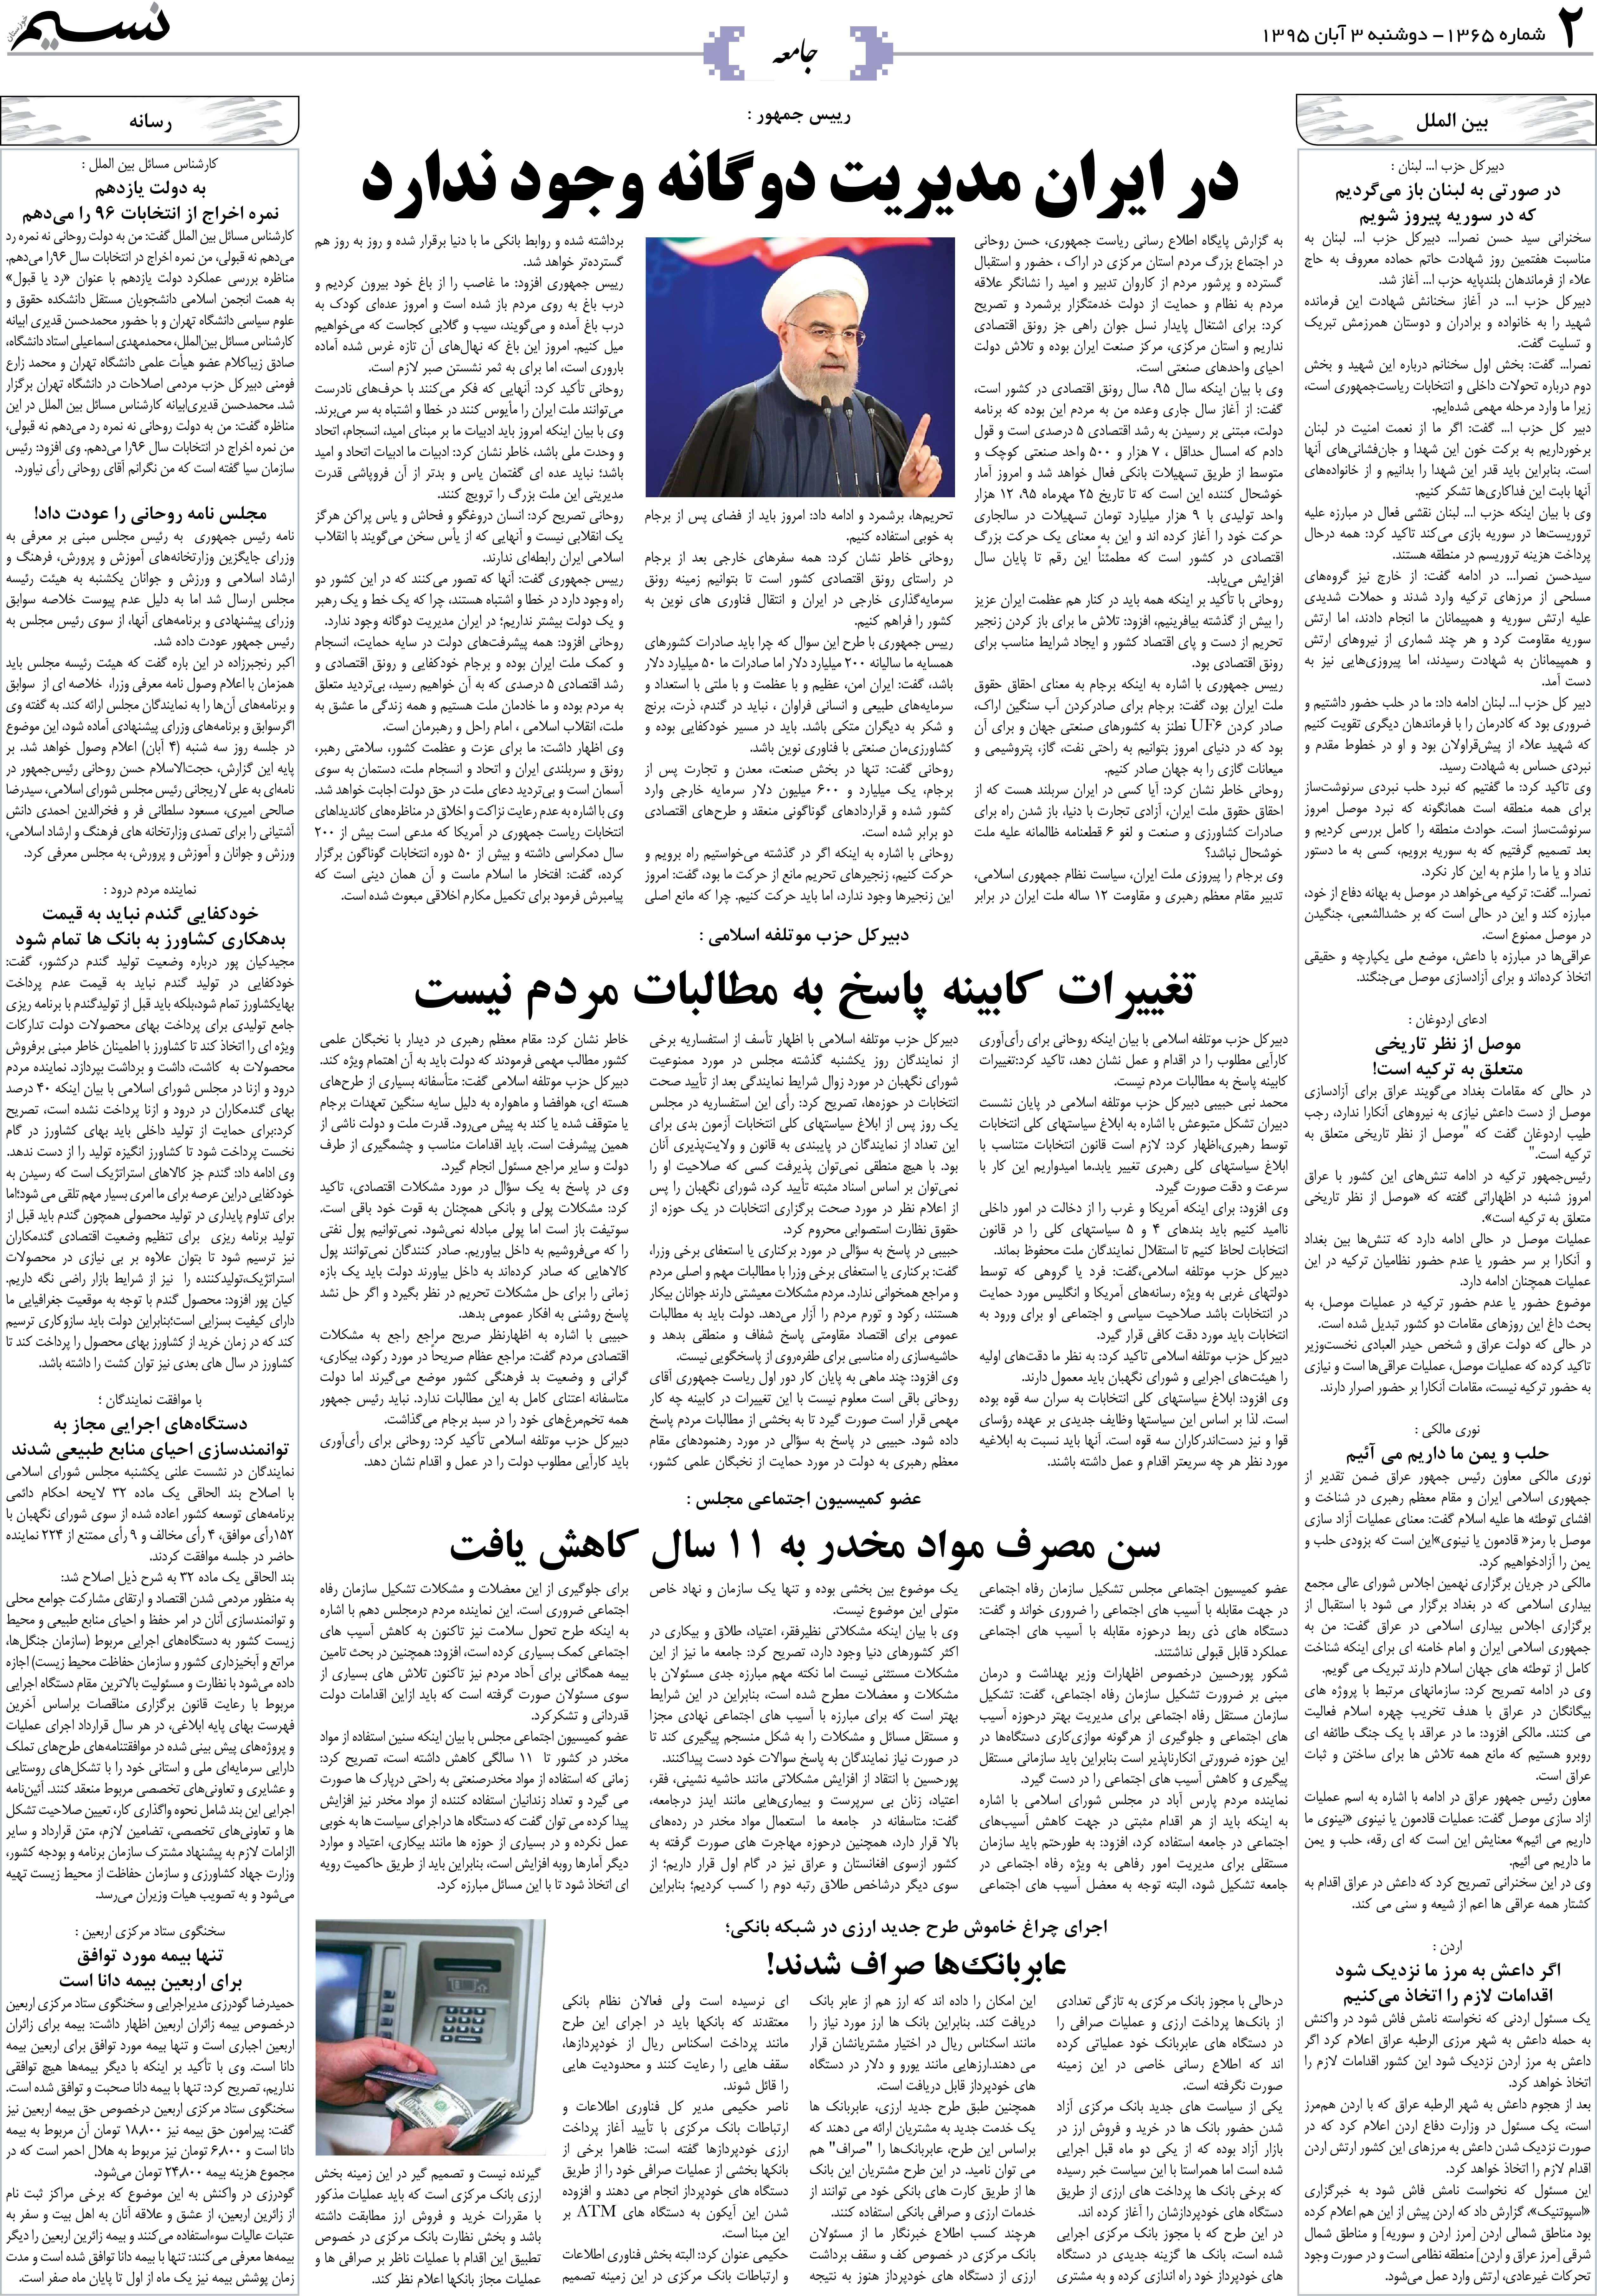 صفحه جامعه روزنامه نسیم شماره 1365